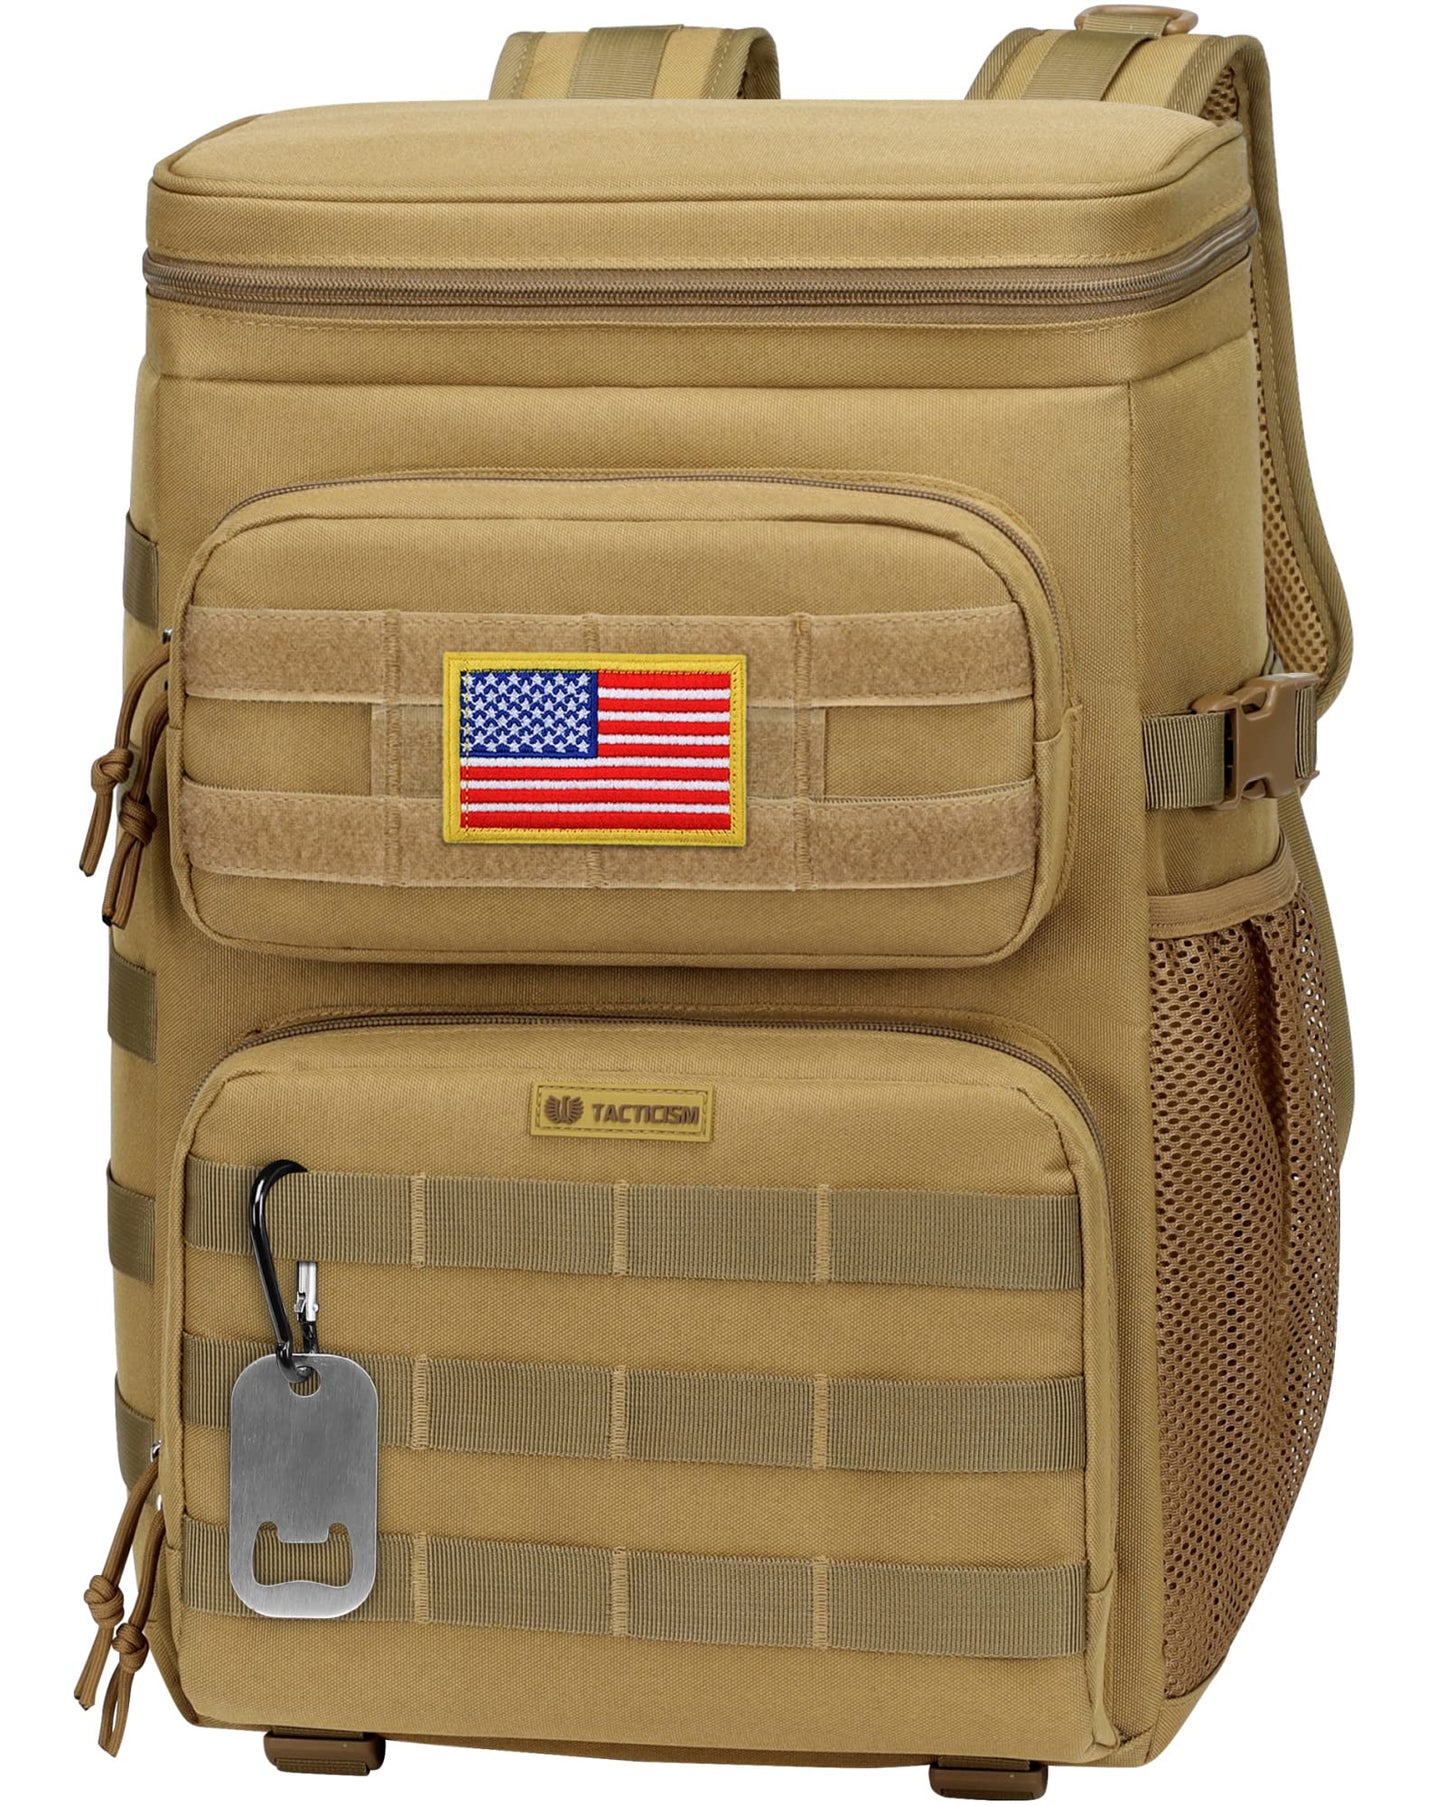 TBCH02 Insulated Cooler Lightweight Backpack